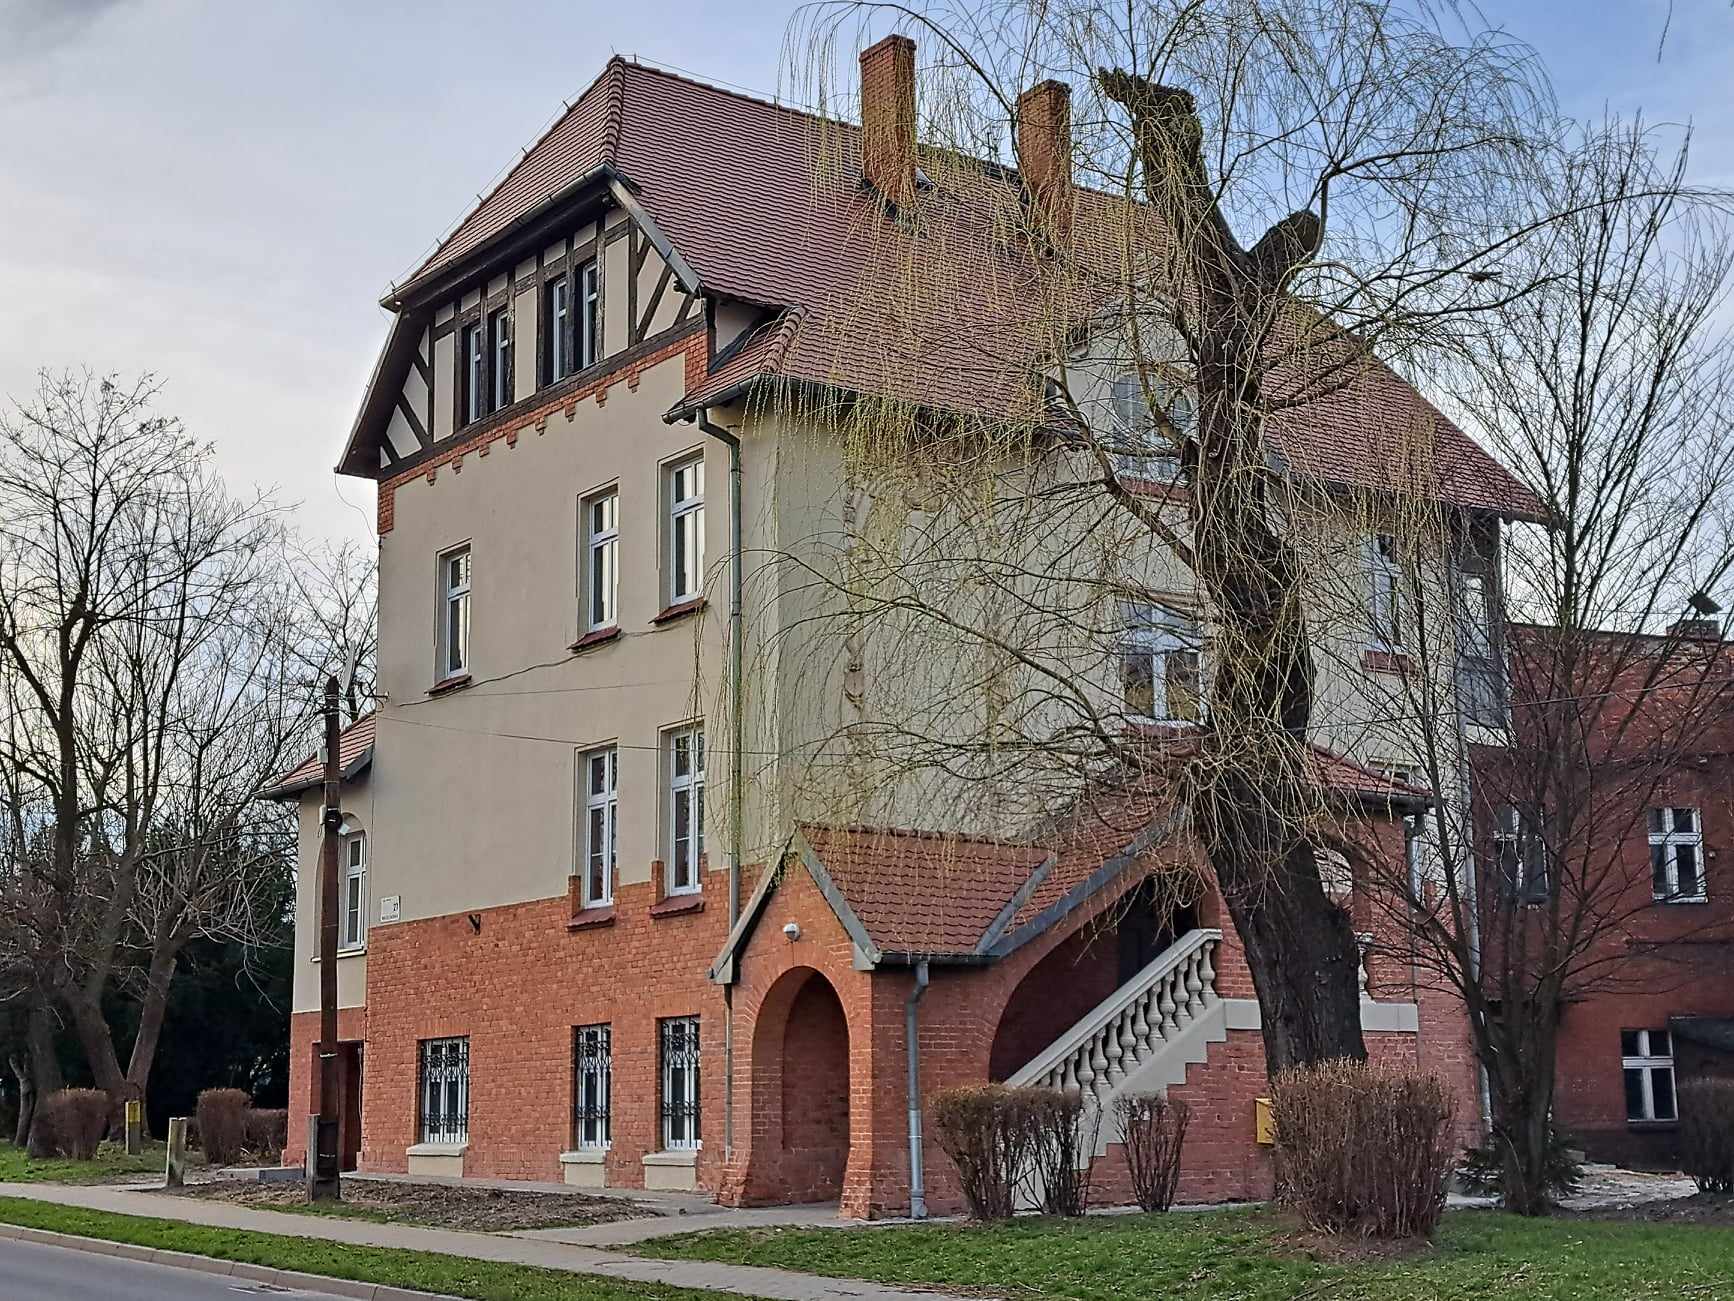 ZGM wyremontuje też pozostałe budynki z czerwonej cegły przy Mikołowskiej